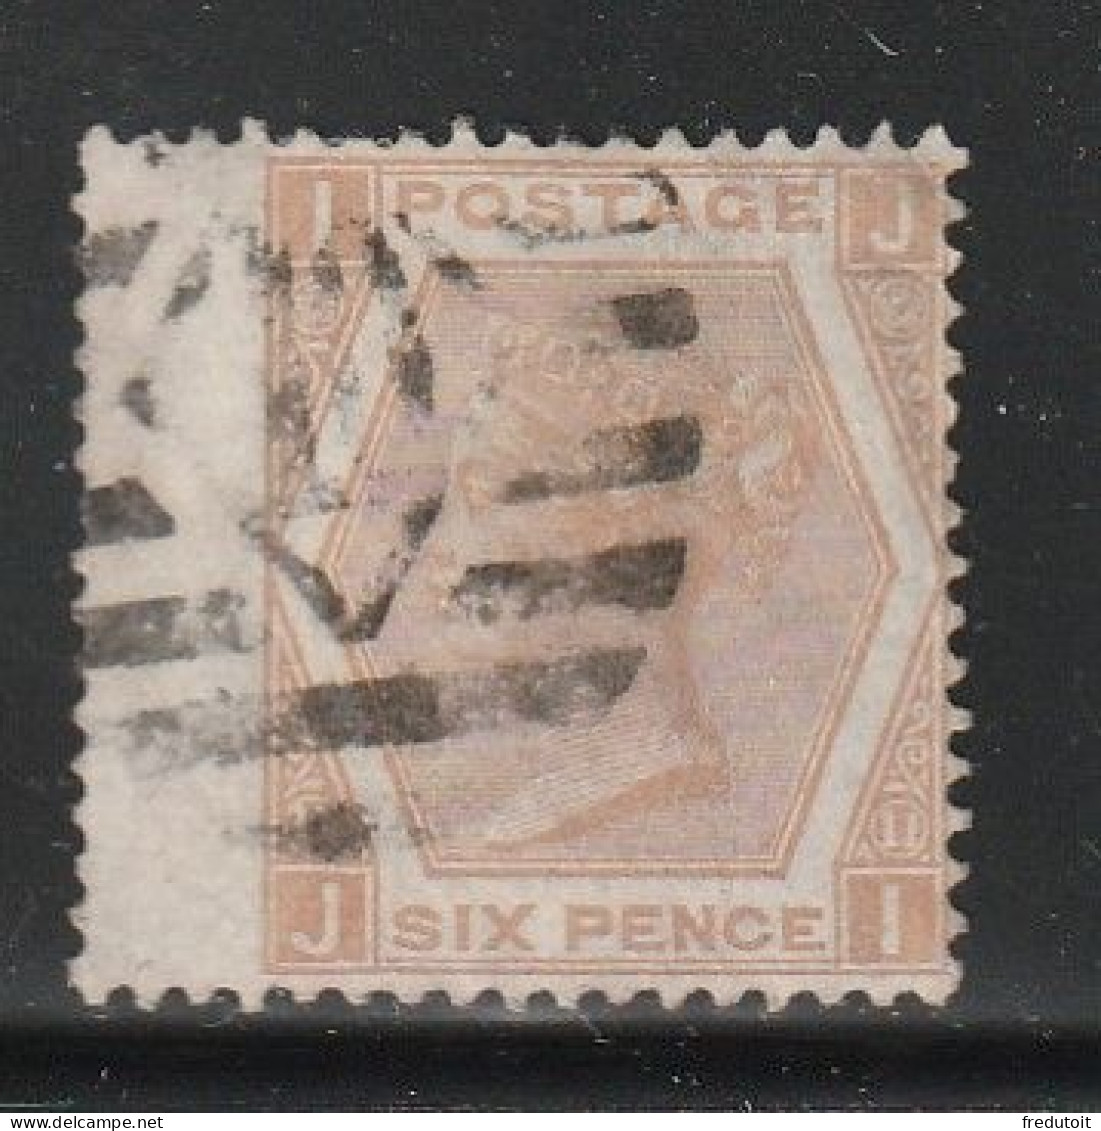 Grande Bretagne - N°47 Obl (1872-73) 6d Bistre - Used Stamps